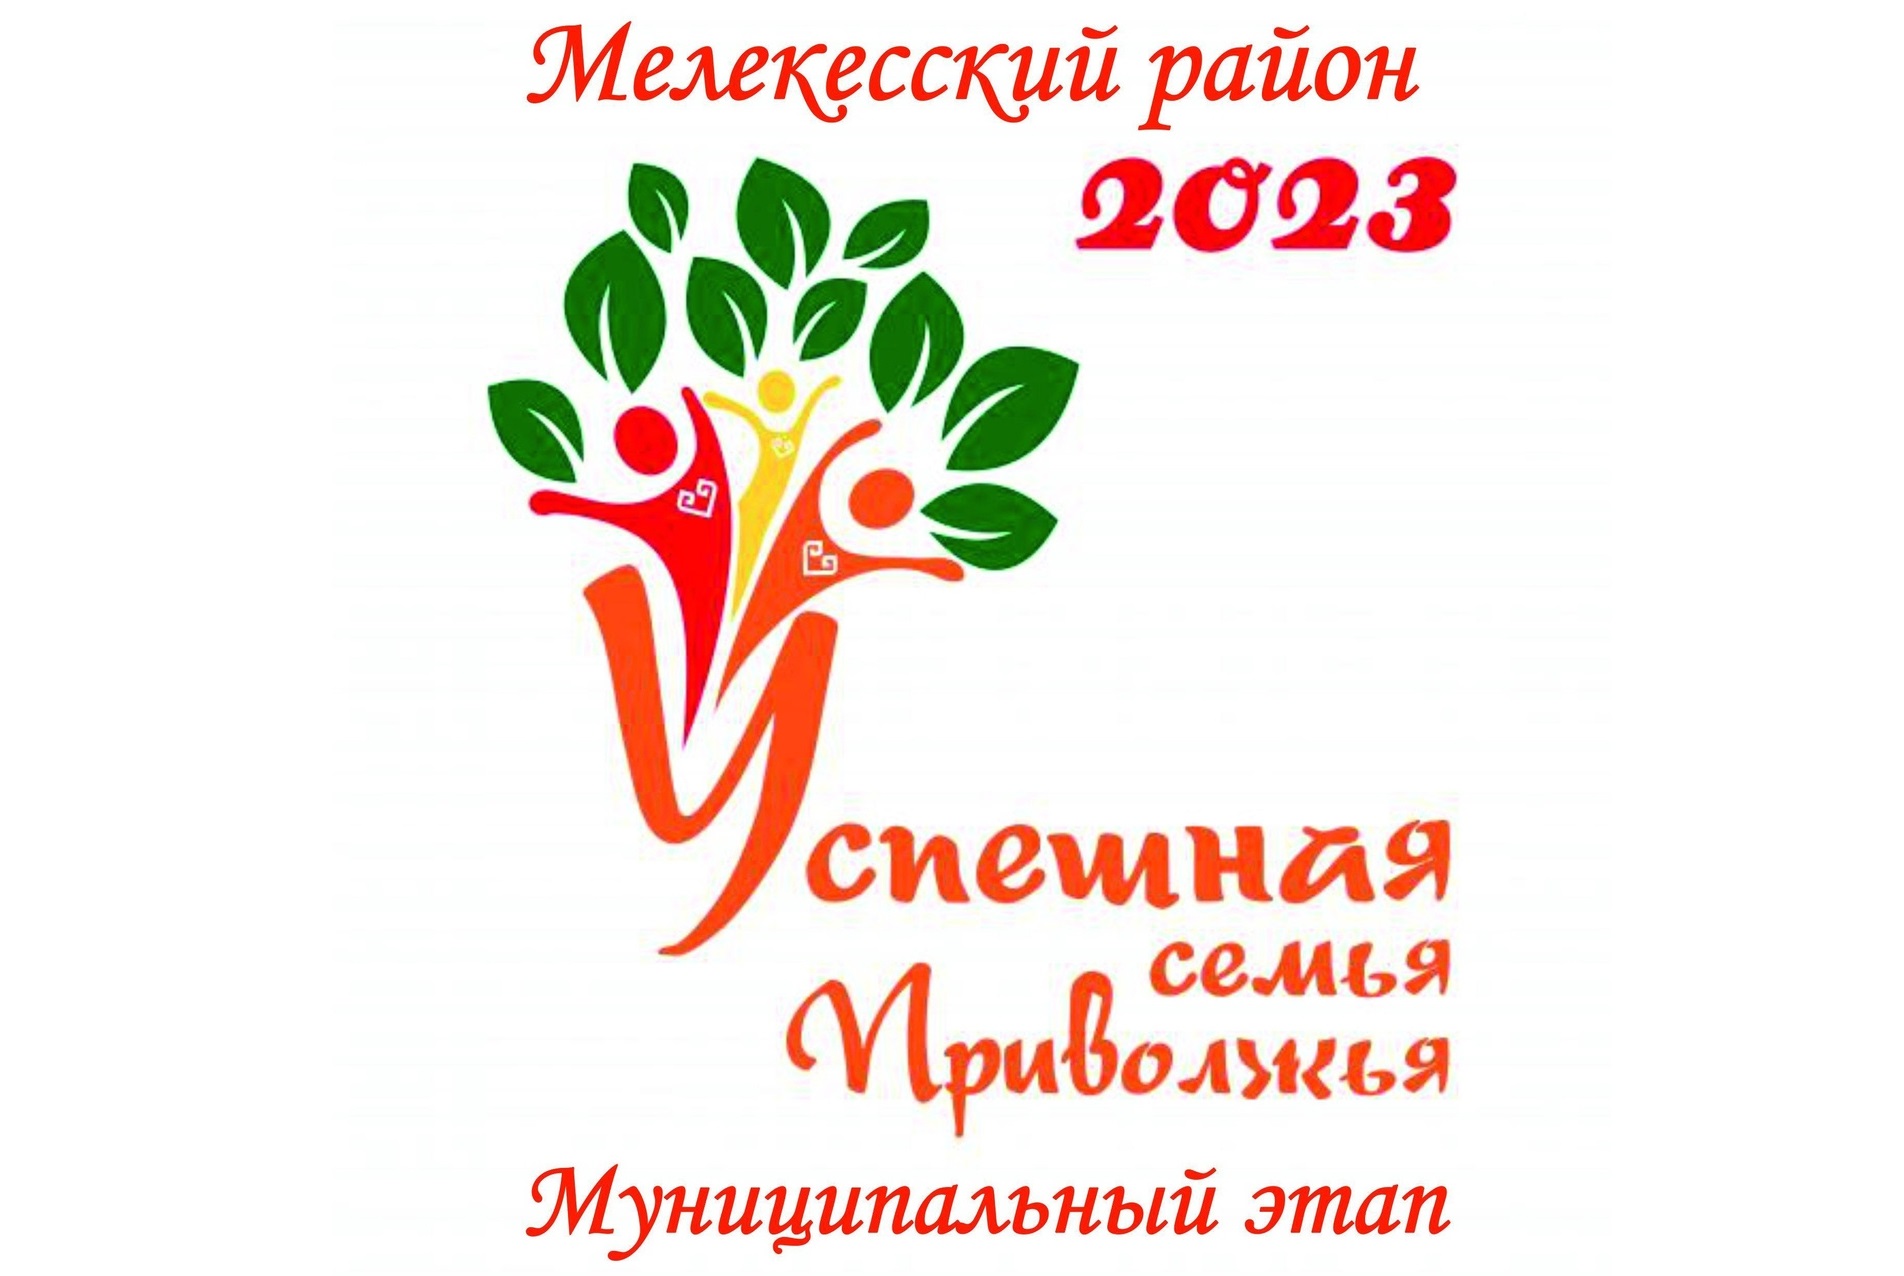 21 апреля в 11:00 в Доме культуры «Родник» в Мулловке состоится муниципальный этап окружного конкурса «Успешная семья Приволжья».